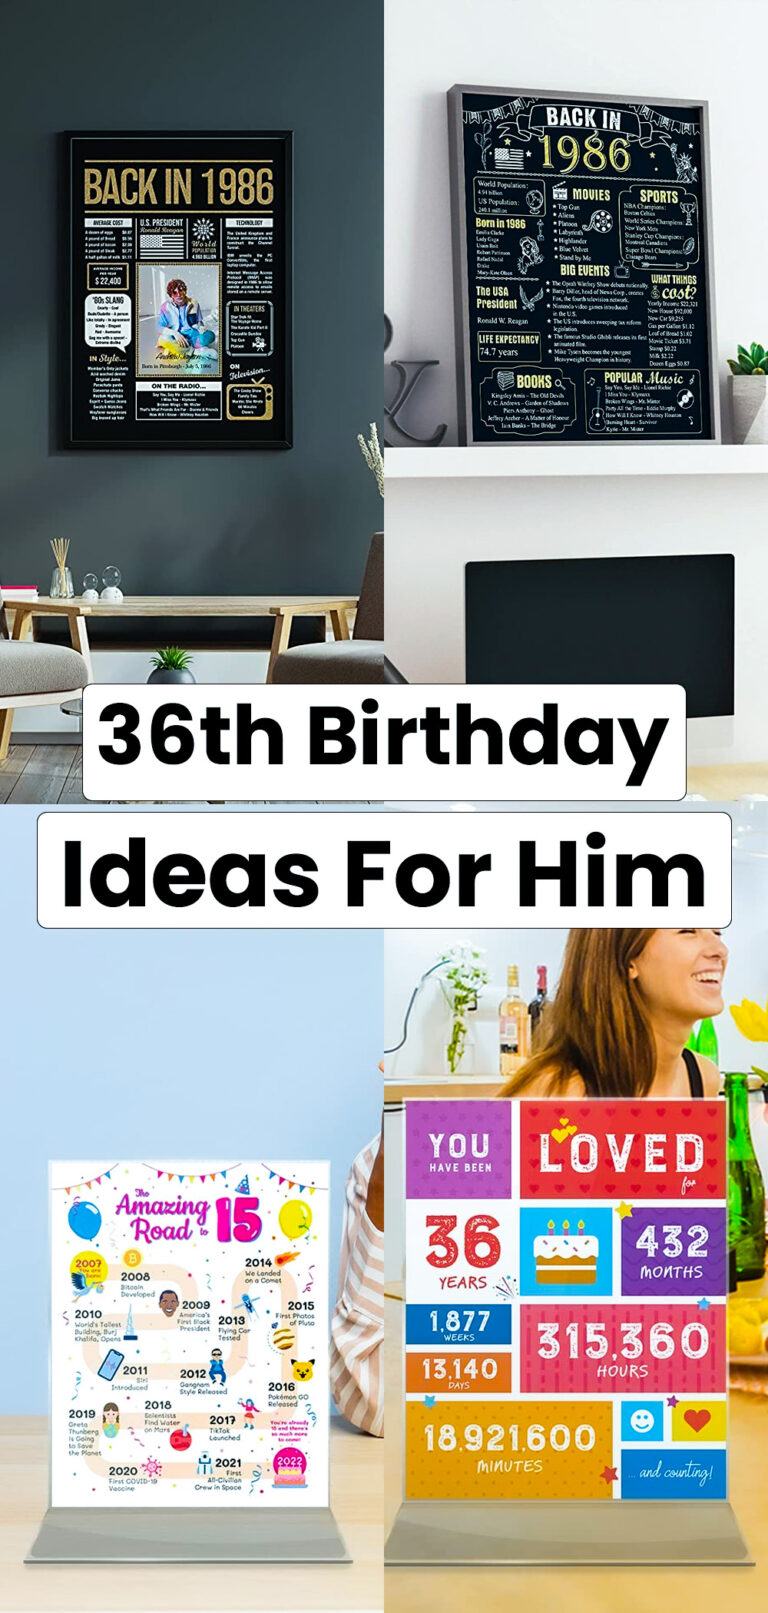 36th Birthday Ideas for Him